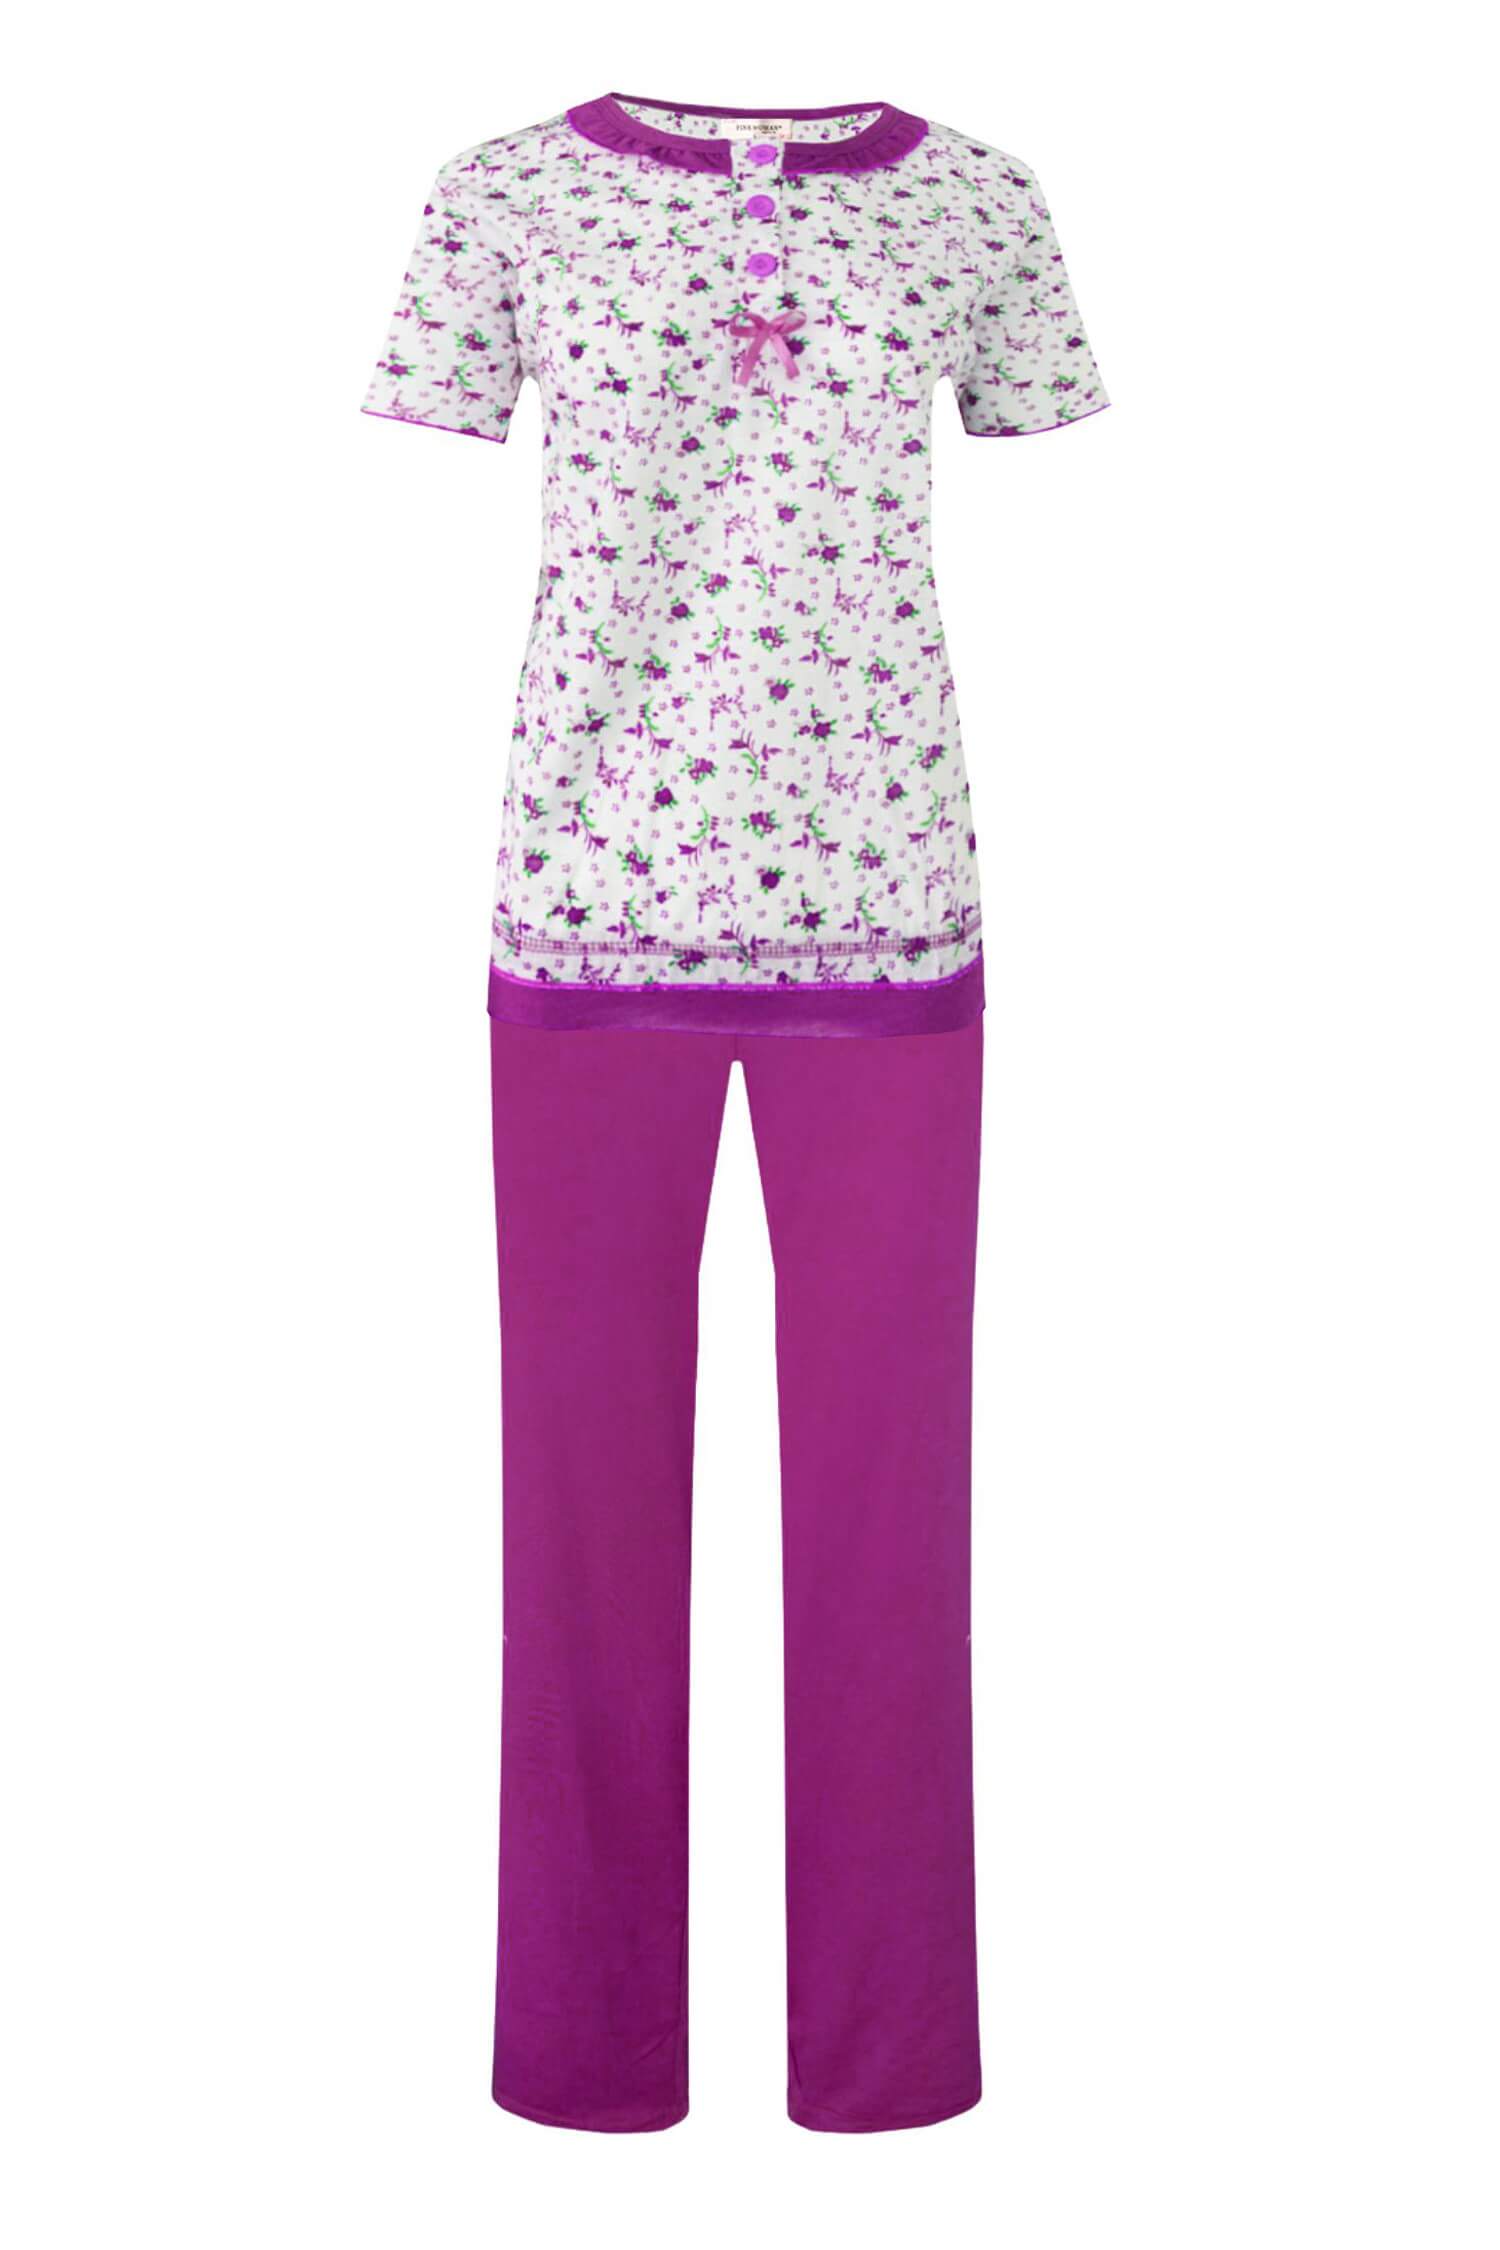 Astrid dámské pyžamo krátký rukáv 2201 3XL tmavě růžová